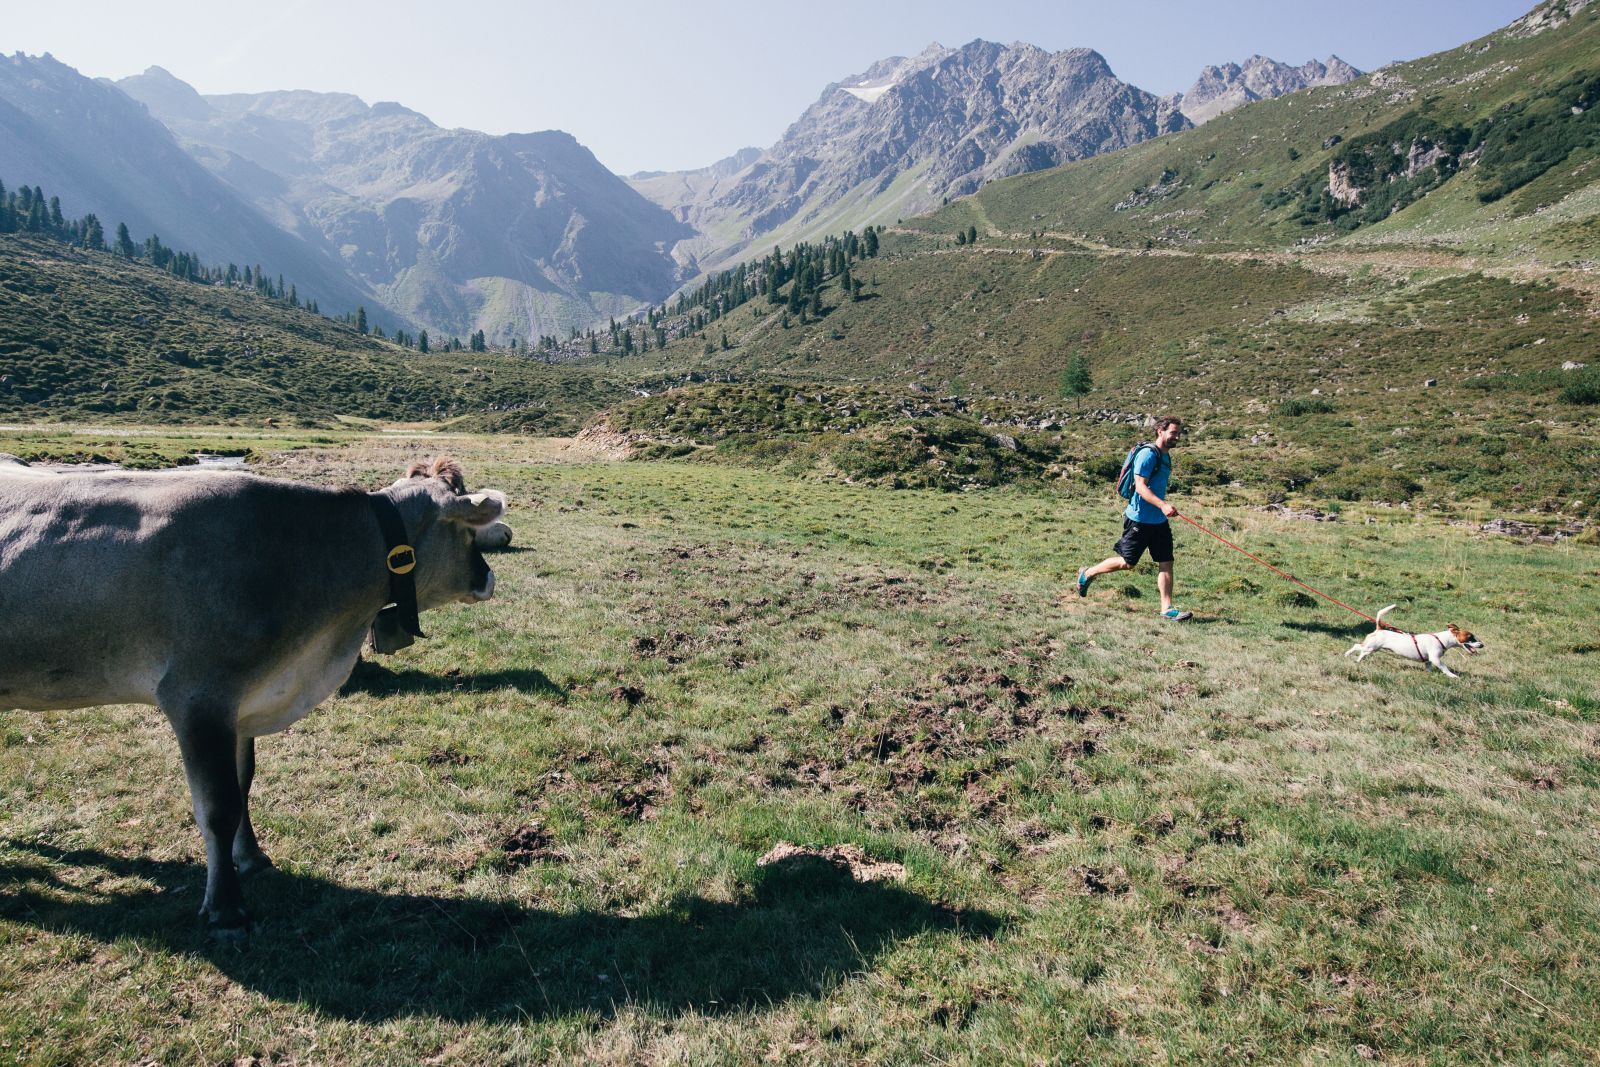 Eine braun-graue Kuh steht auf einer Almwiese. Ein Mann spaziert mit einem Hund an der Leine in 20 Meter Abstand vorbei. Berge im Hintergrund.